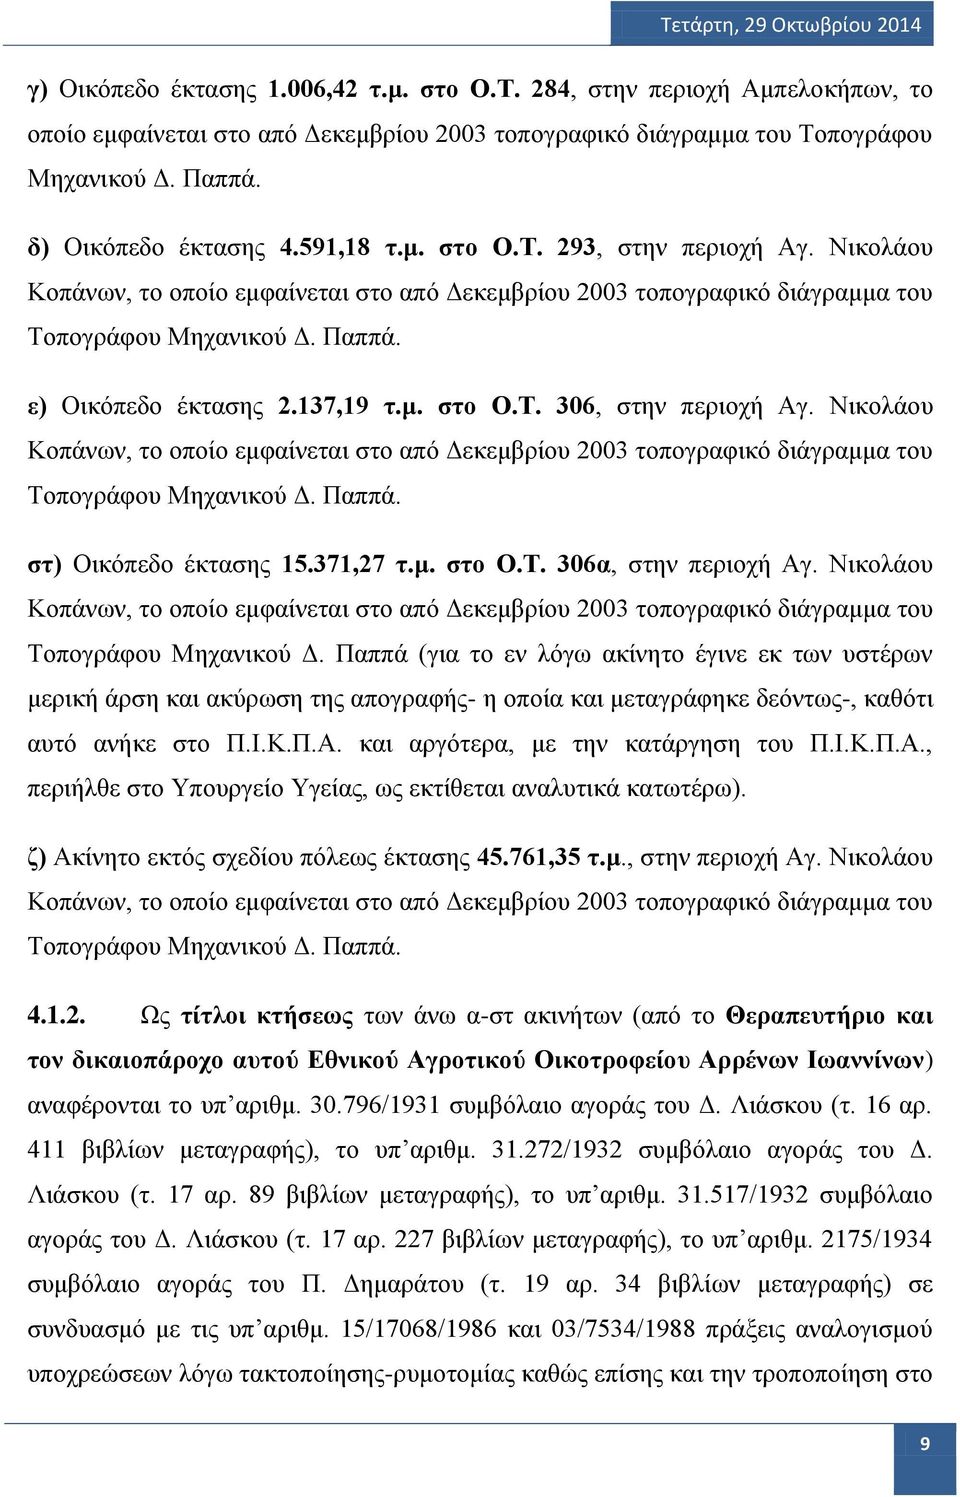 Νικολάου Κοπάνων, το οποίο εμφαίνεται στο από Δεκεμβρίου 2003 τοπογραφικό διάγραμμα του Τοπογράφου Μηχανικού Δ. Παππά. στ) Οικόπεδο έκτασης 15.371,27 τ.μ. στο Ο.Τ. 306α, στην περιοχή Αγ.